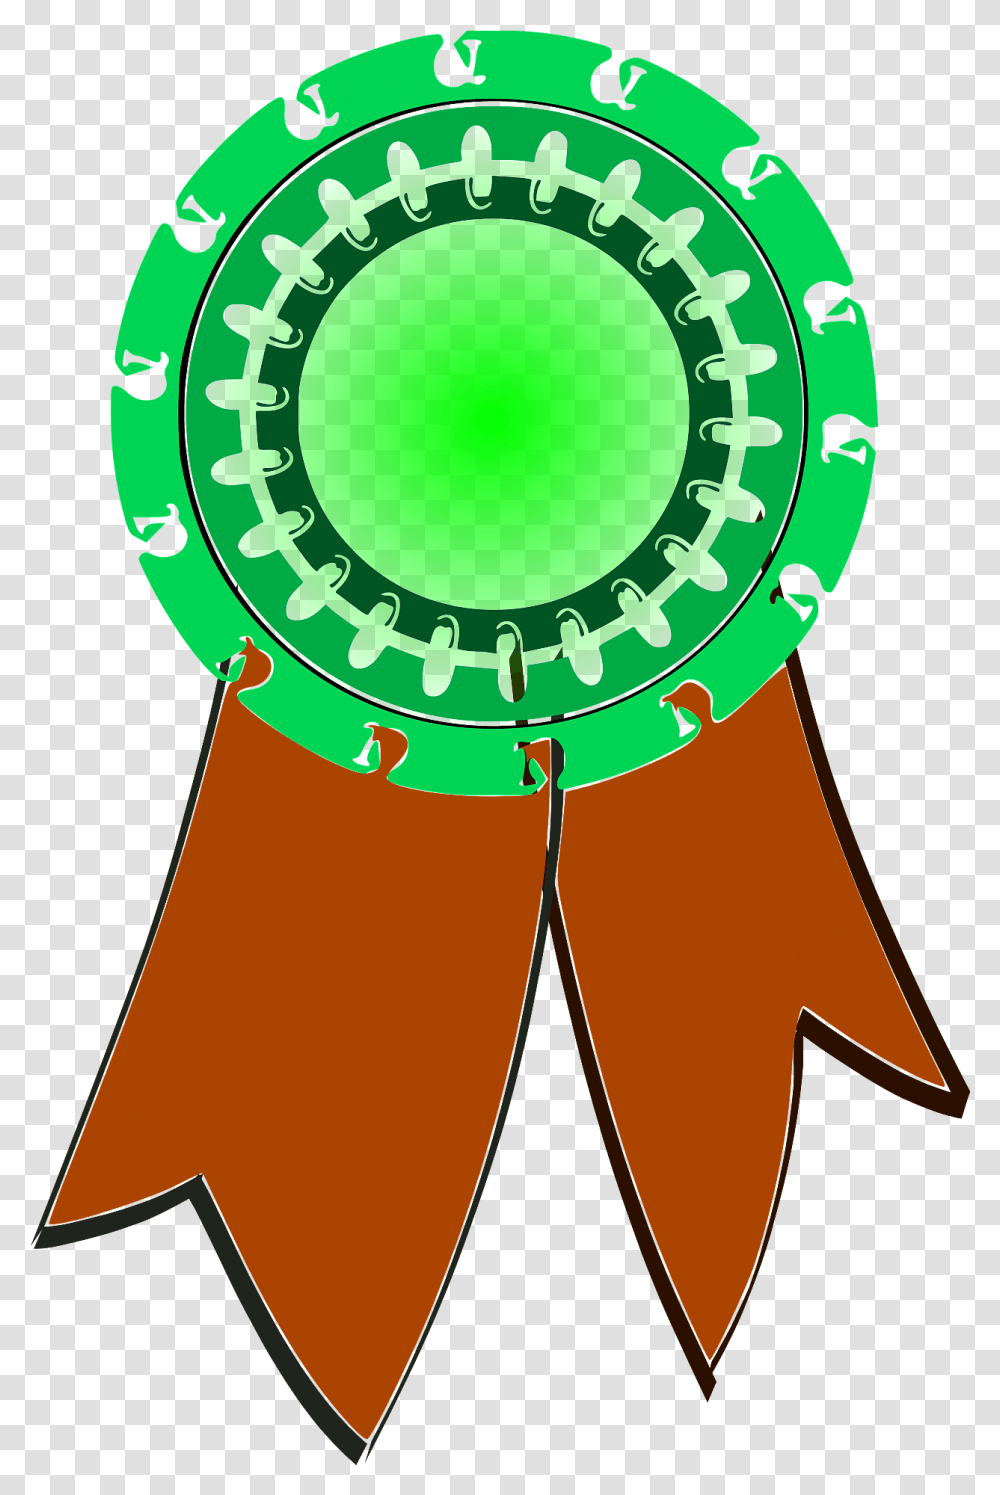 Green And Brown Award Ribbon Clipart Free Download Huy Hieu Chien Thang, Logo, Symbol, Trademark, Badge Transparent Png